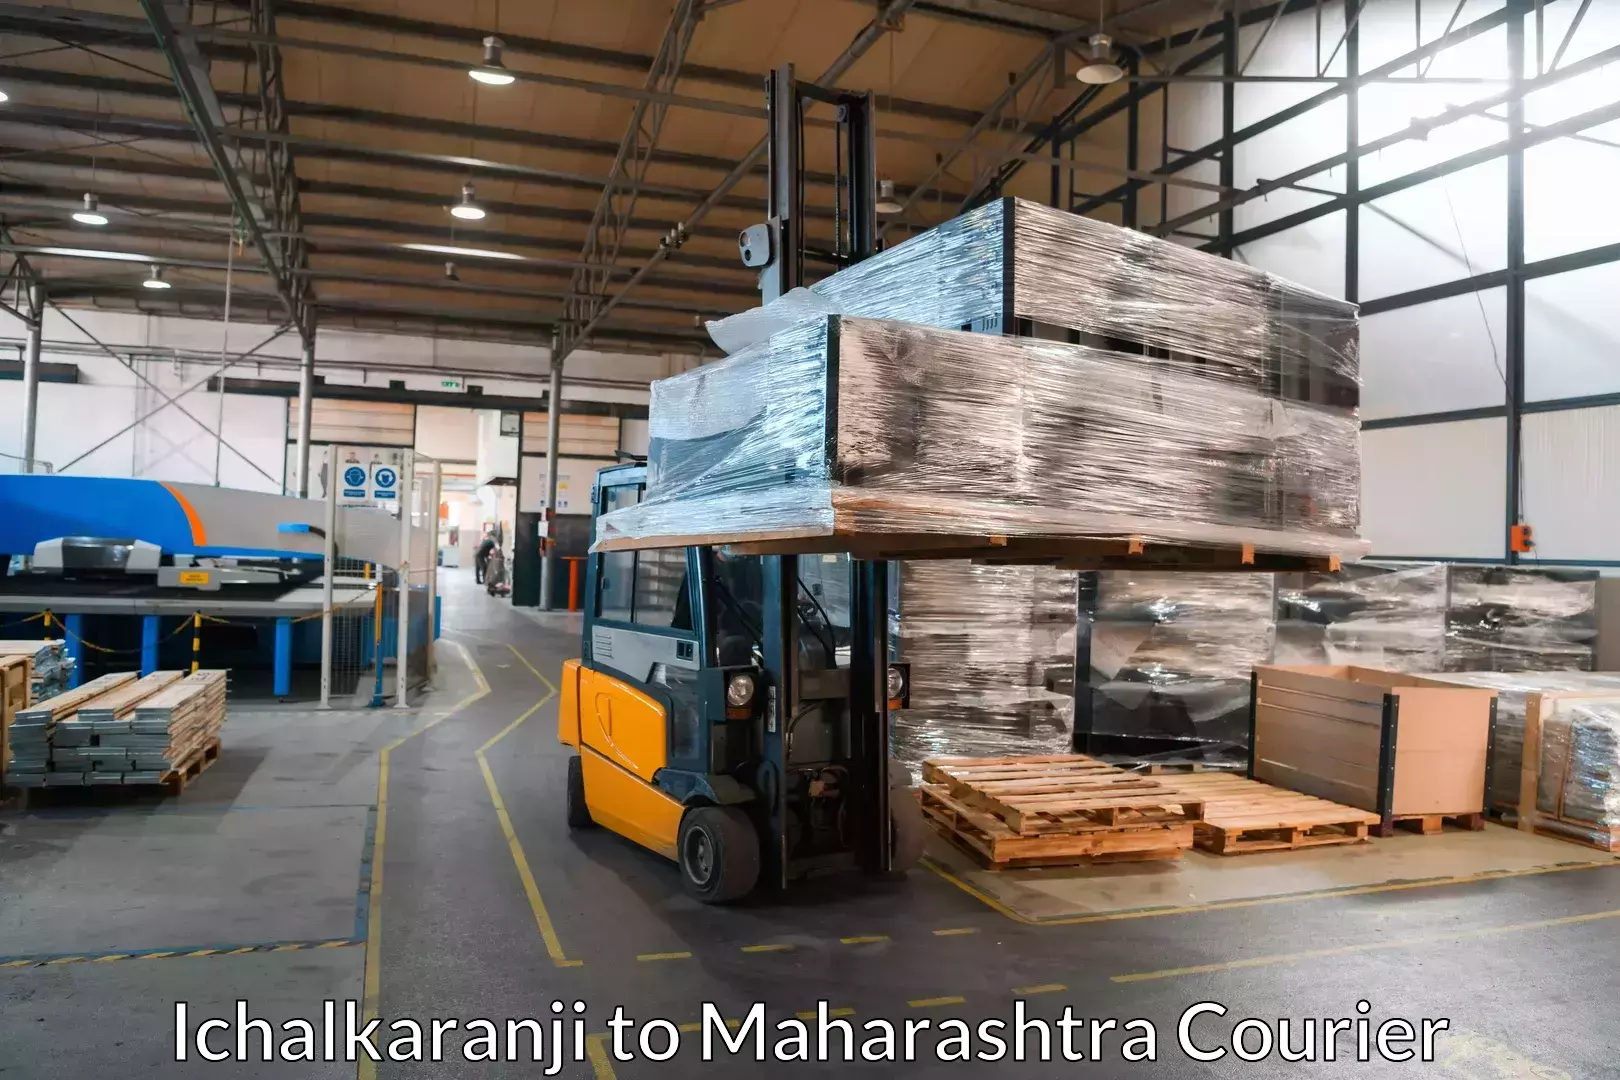 Furniture transport specialists Ichalkaranji to Ahmedpur